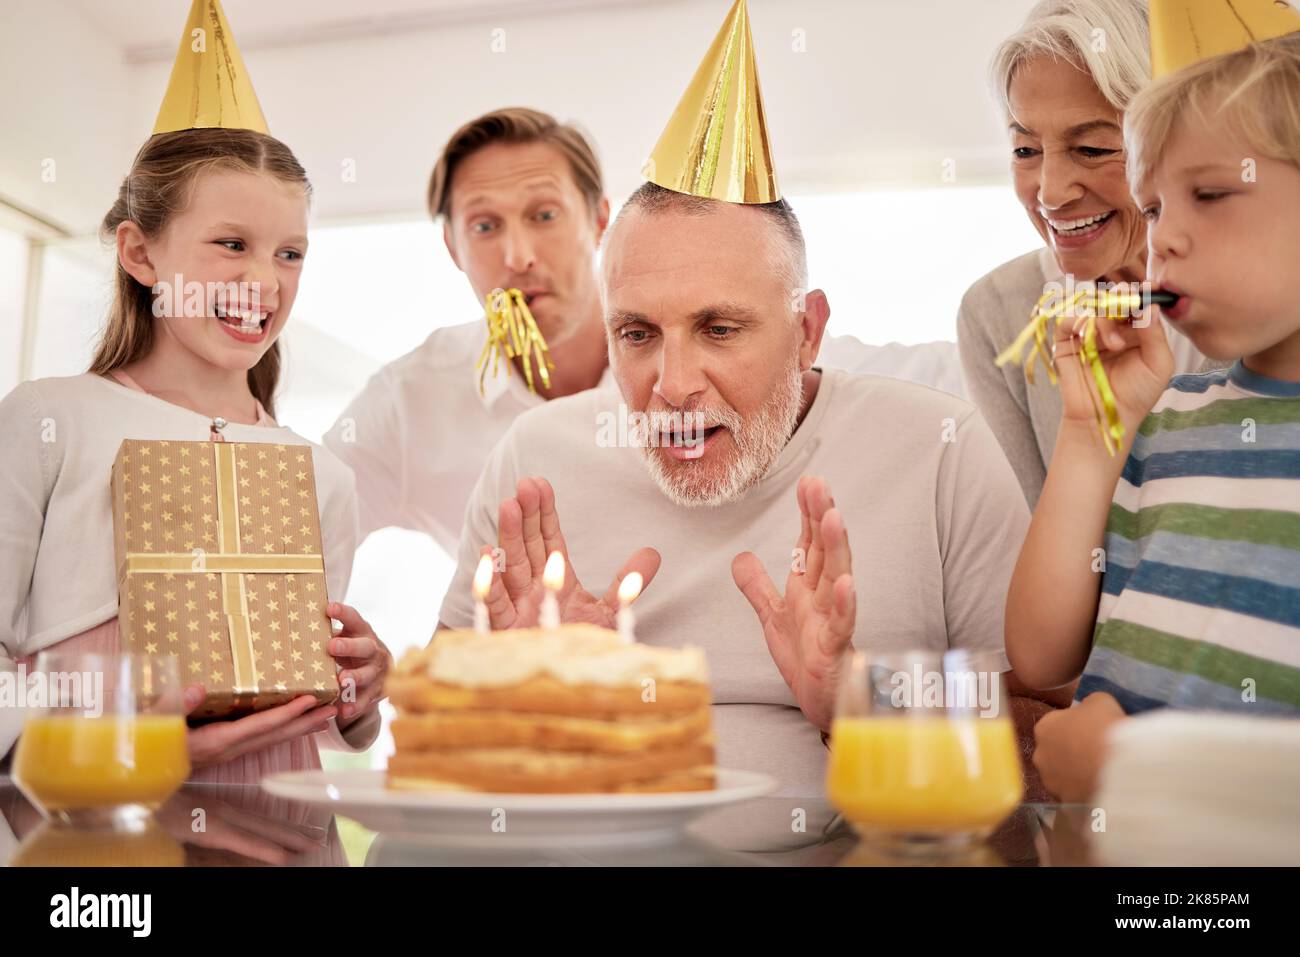 Gâteau d'anniversaire, célébration et grand-père avec des enfants de famille chantant, excités et célébrer ensemble. Personne âgée, homme âgé avec enfants, boîte cadeau Banque D'Images